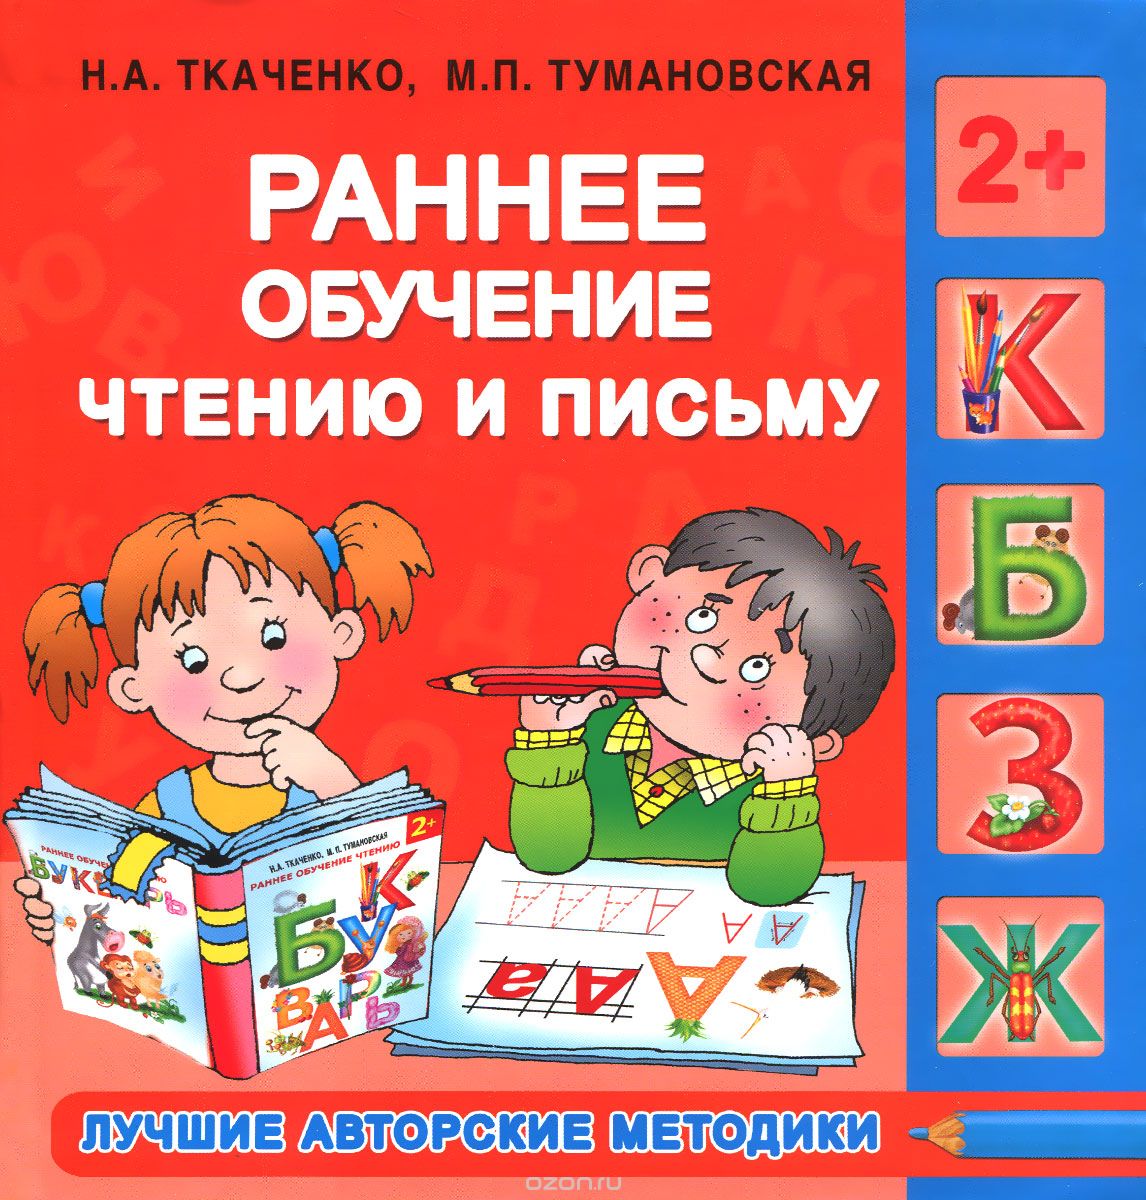 Скачать книгу "Раннее обучение чтению и письму, Н. А. Ткаченко, М. П. Тумановская"